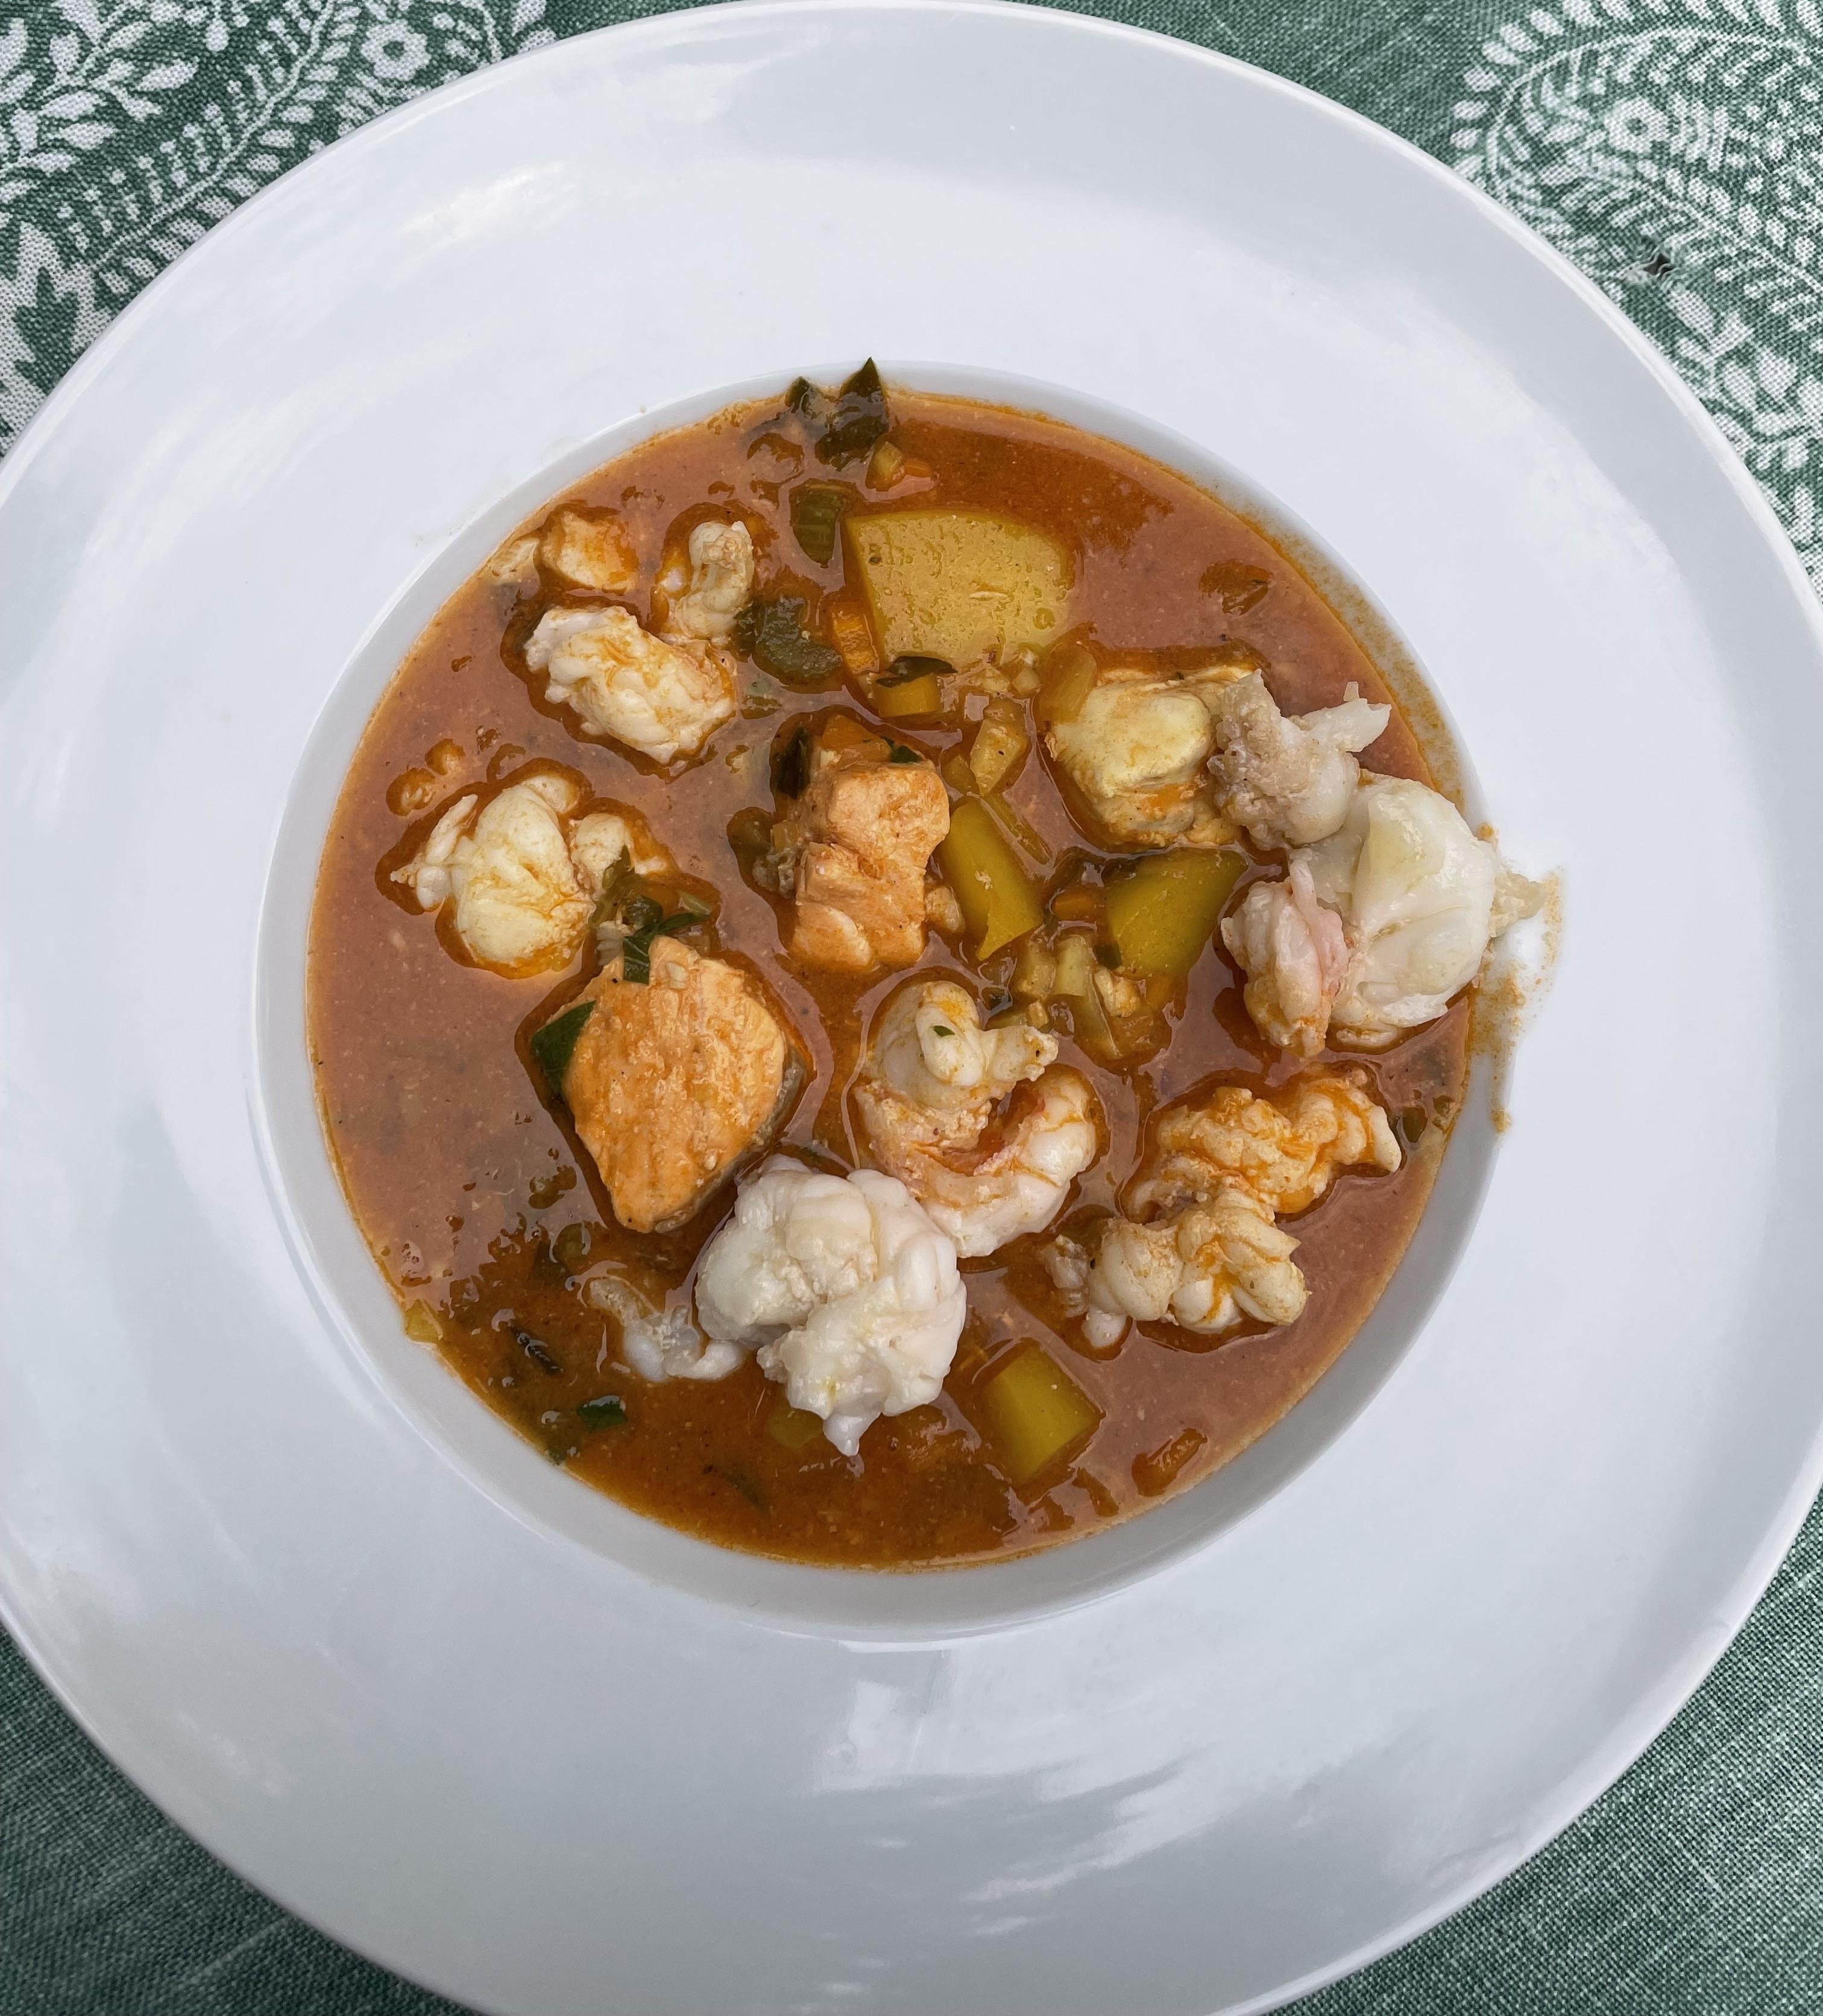 #foodchallenge
#genussmomente
bei Winterwetter: eine schöne Suppe